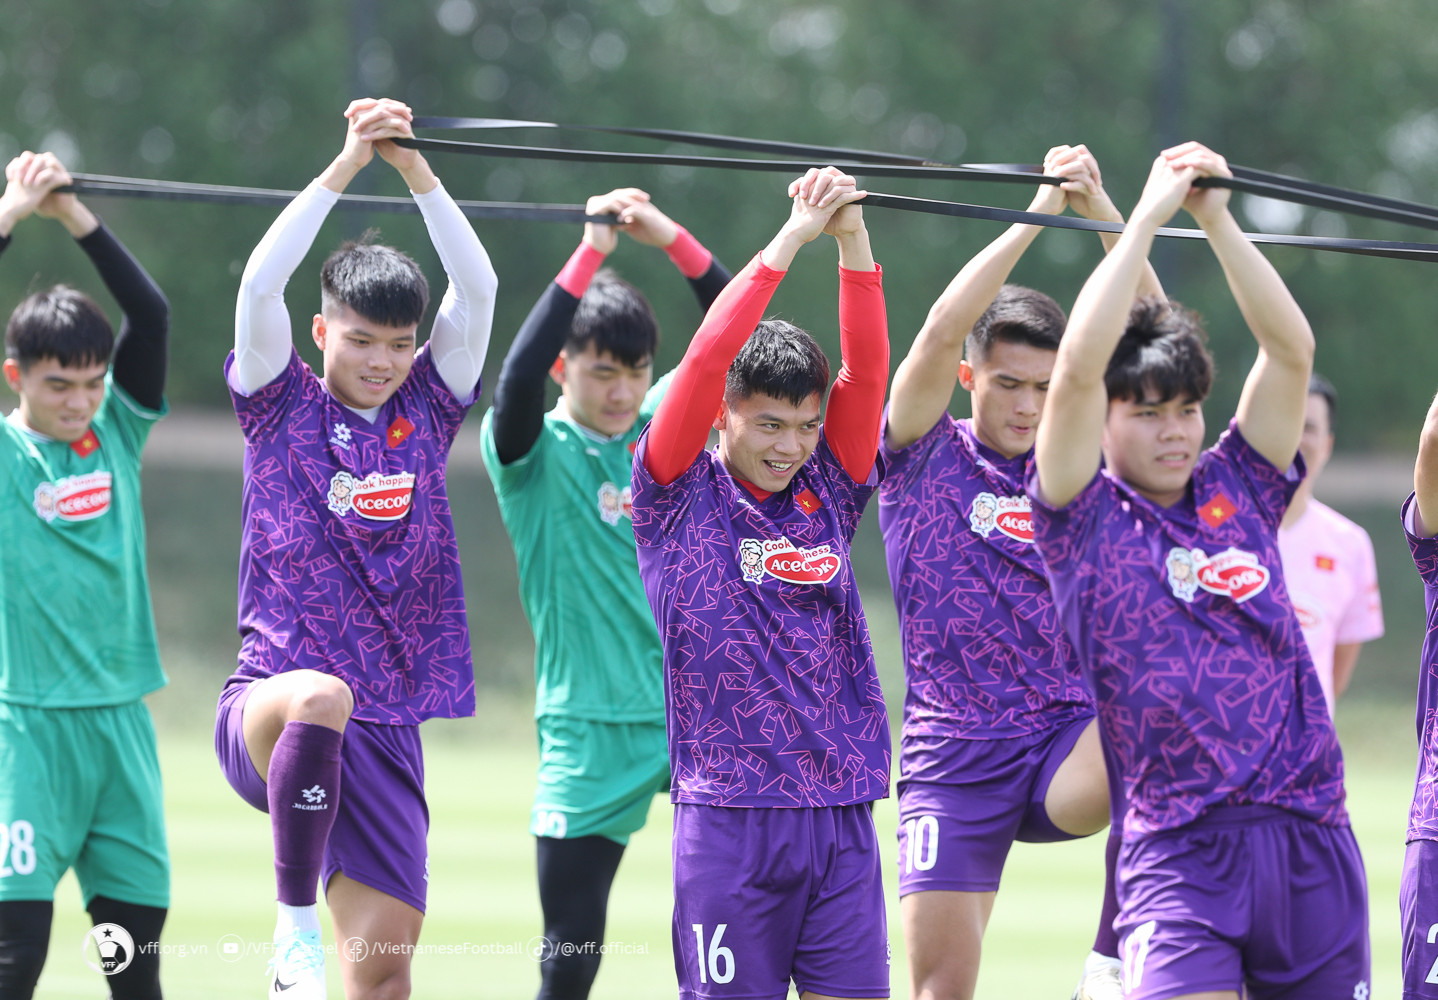 U23 rèn thêm 'miếng đánh' trước trận khai mạc VCK U23 châu Á  - Ảnh 1